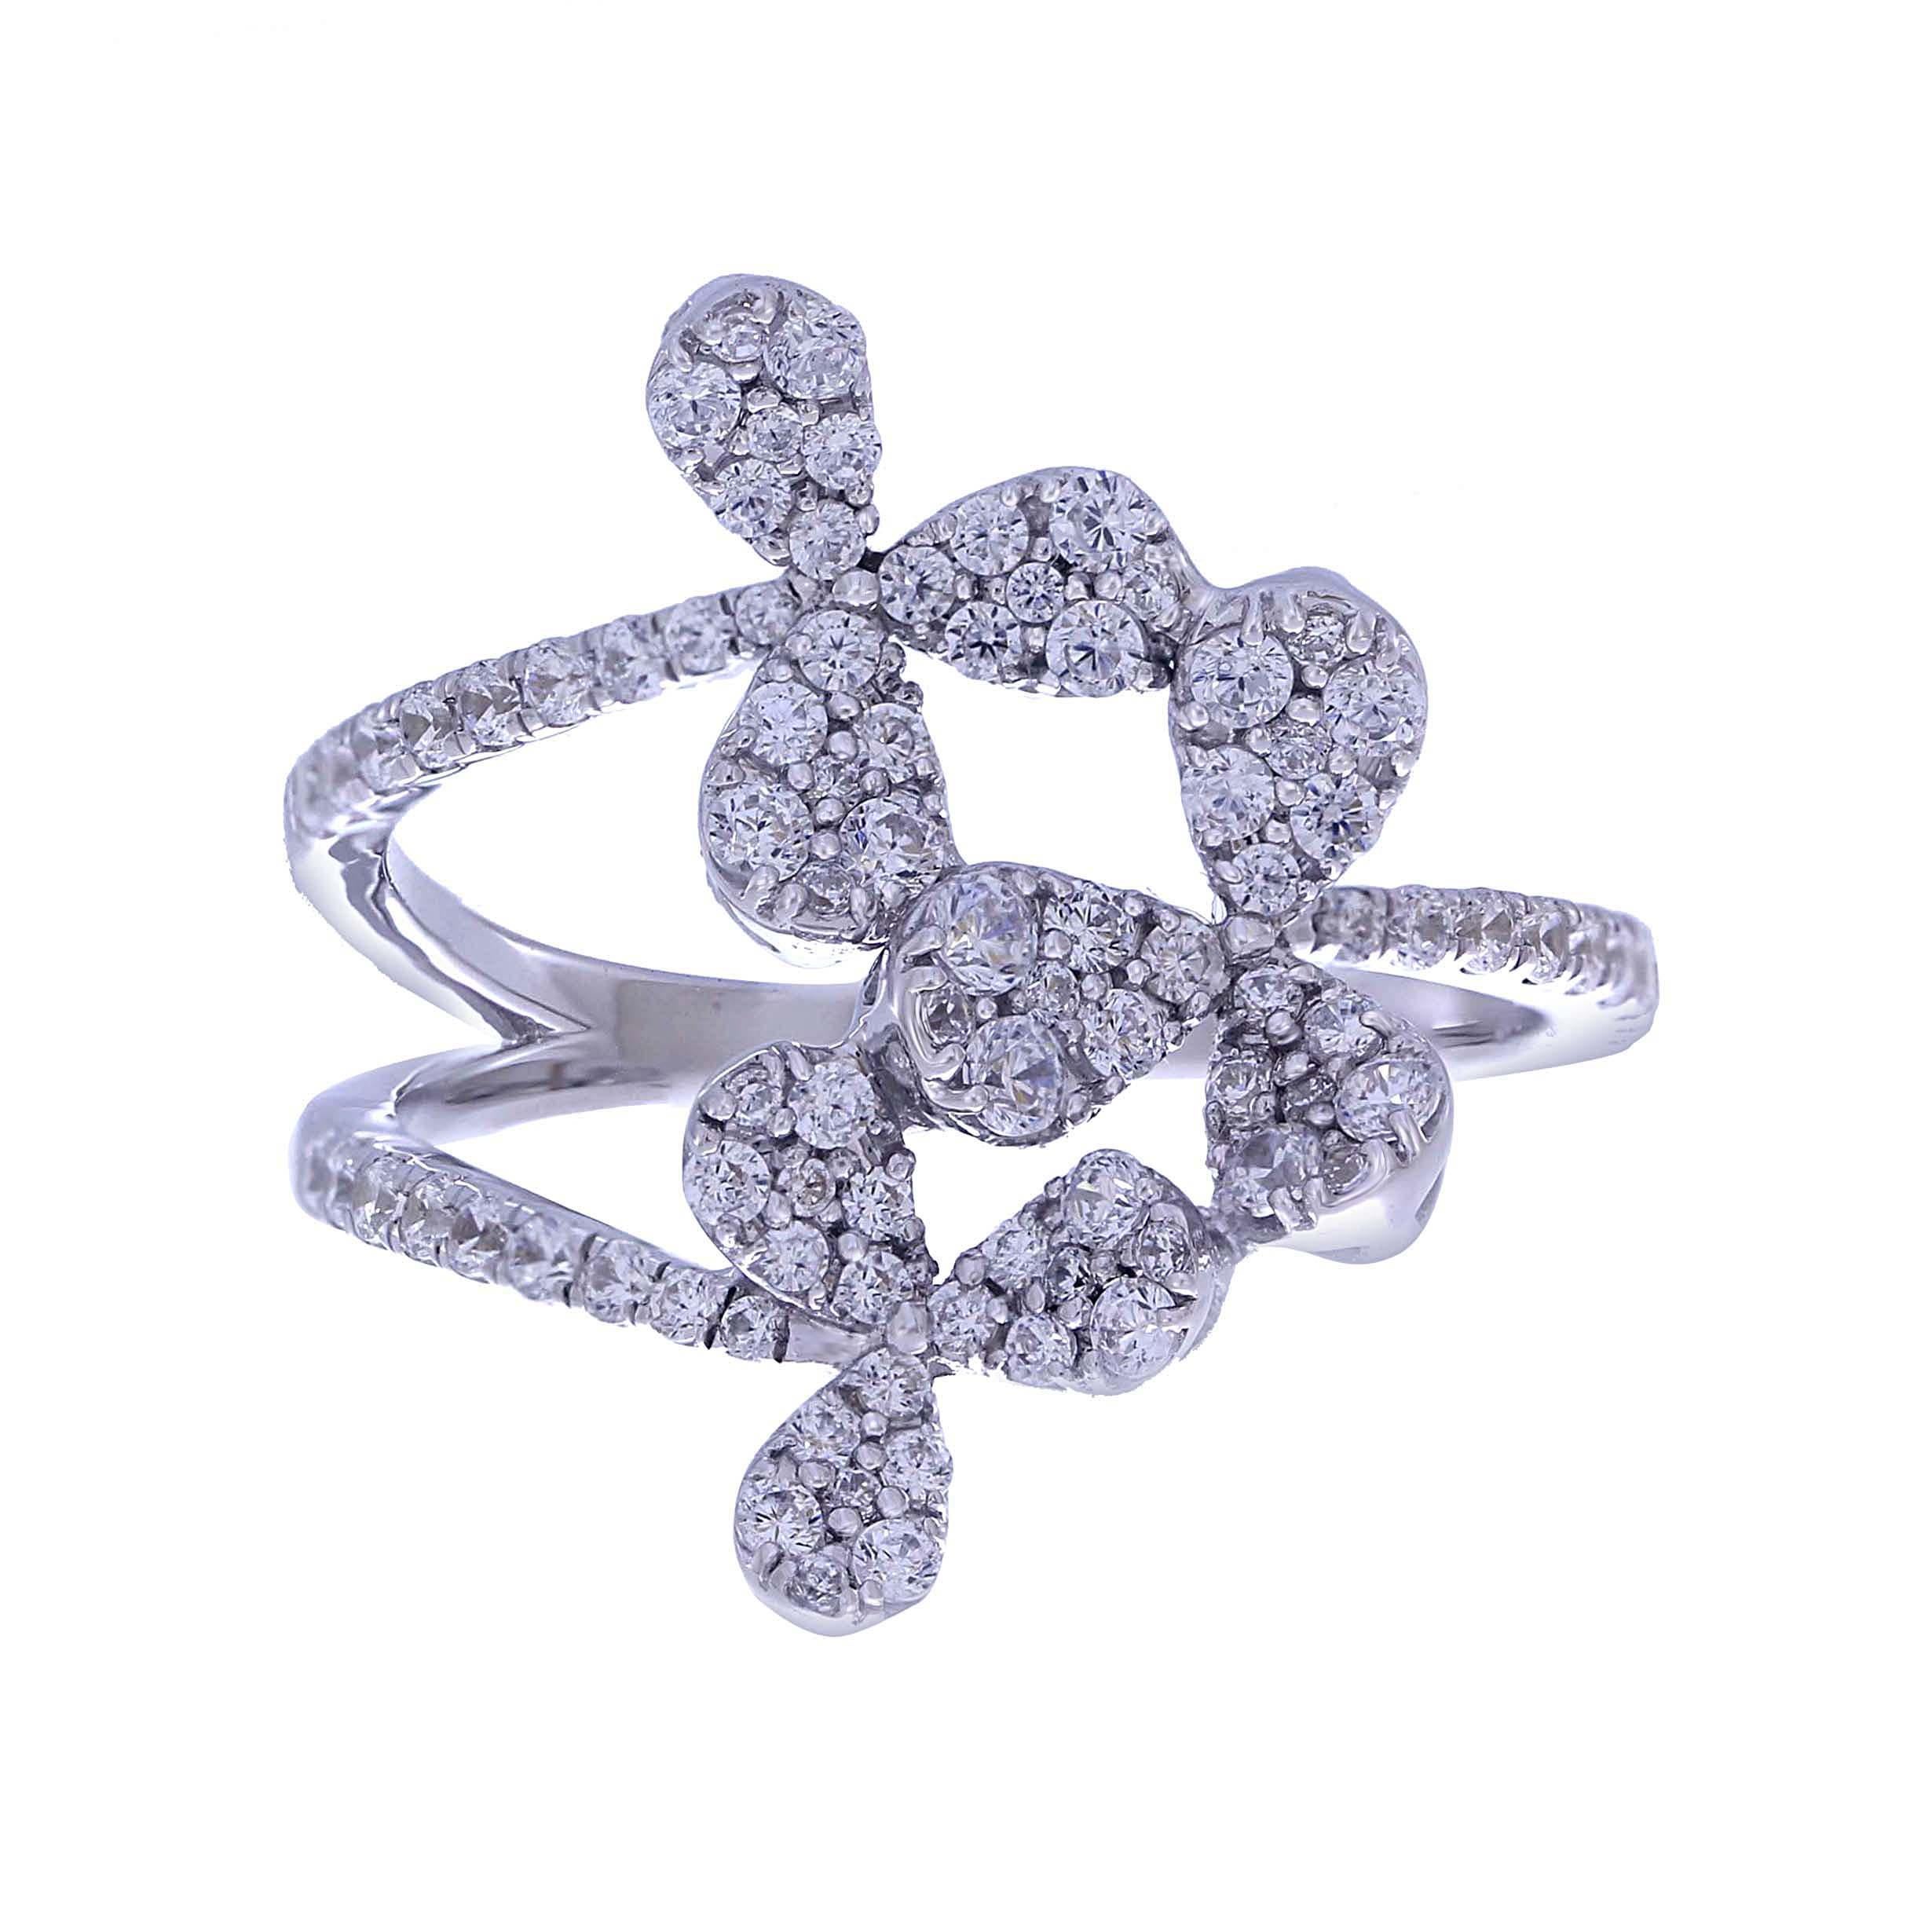 Modern 0.70 Carat White Diamond Pave Ring with 18 Karat White Gold Floral Design Ring